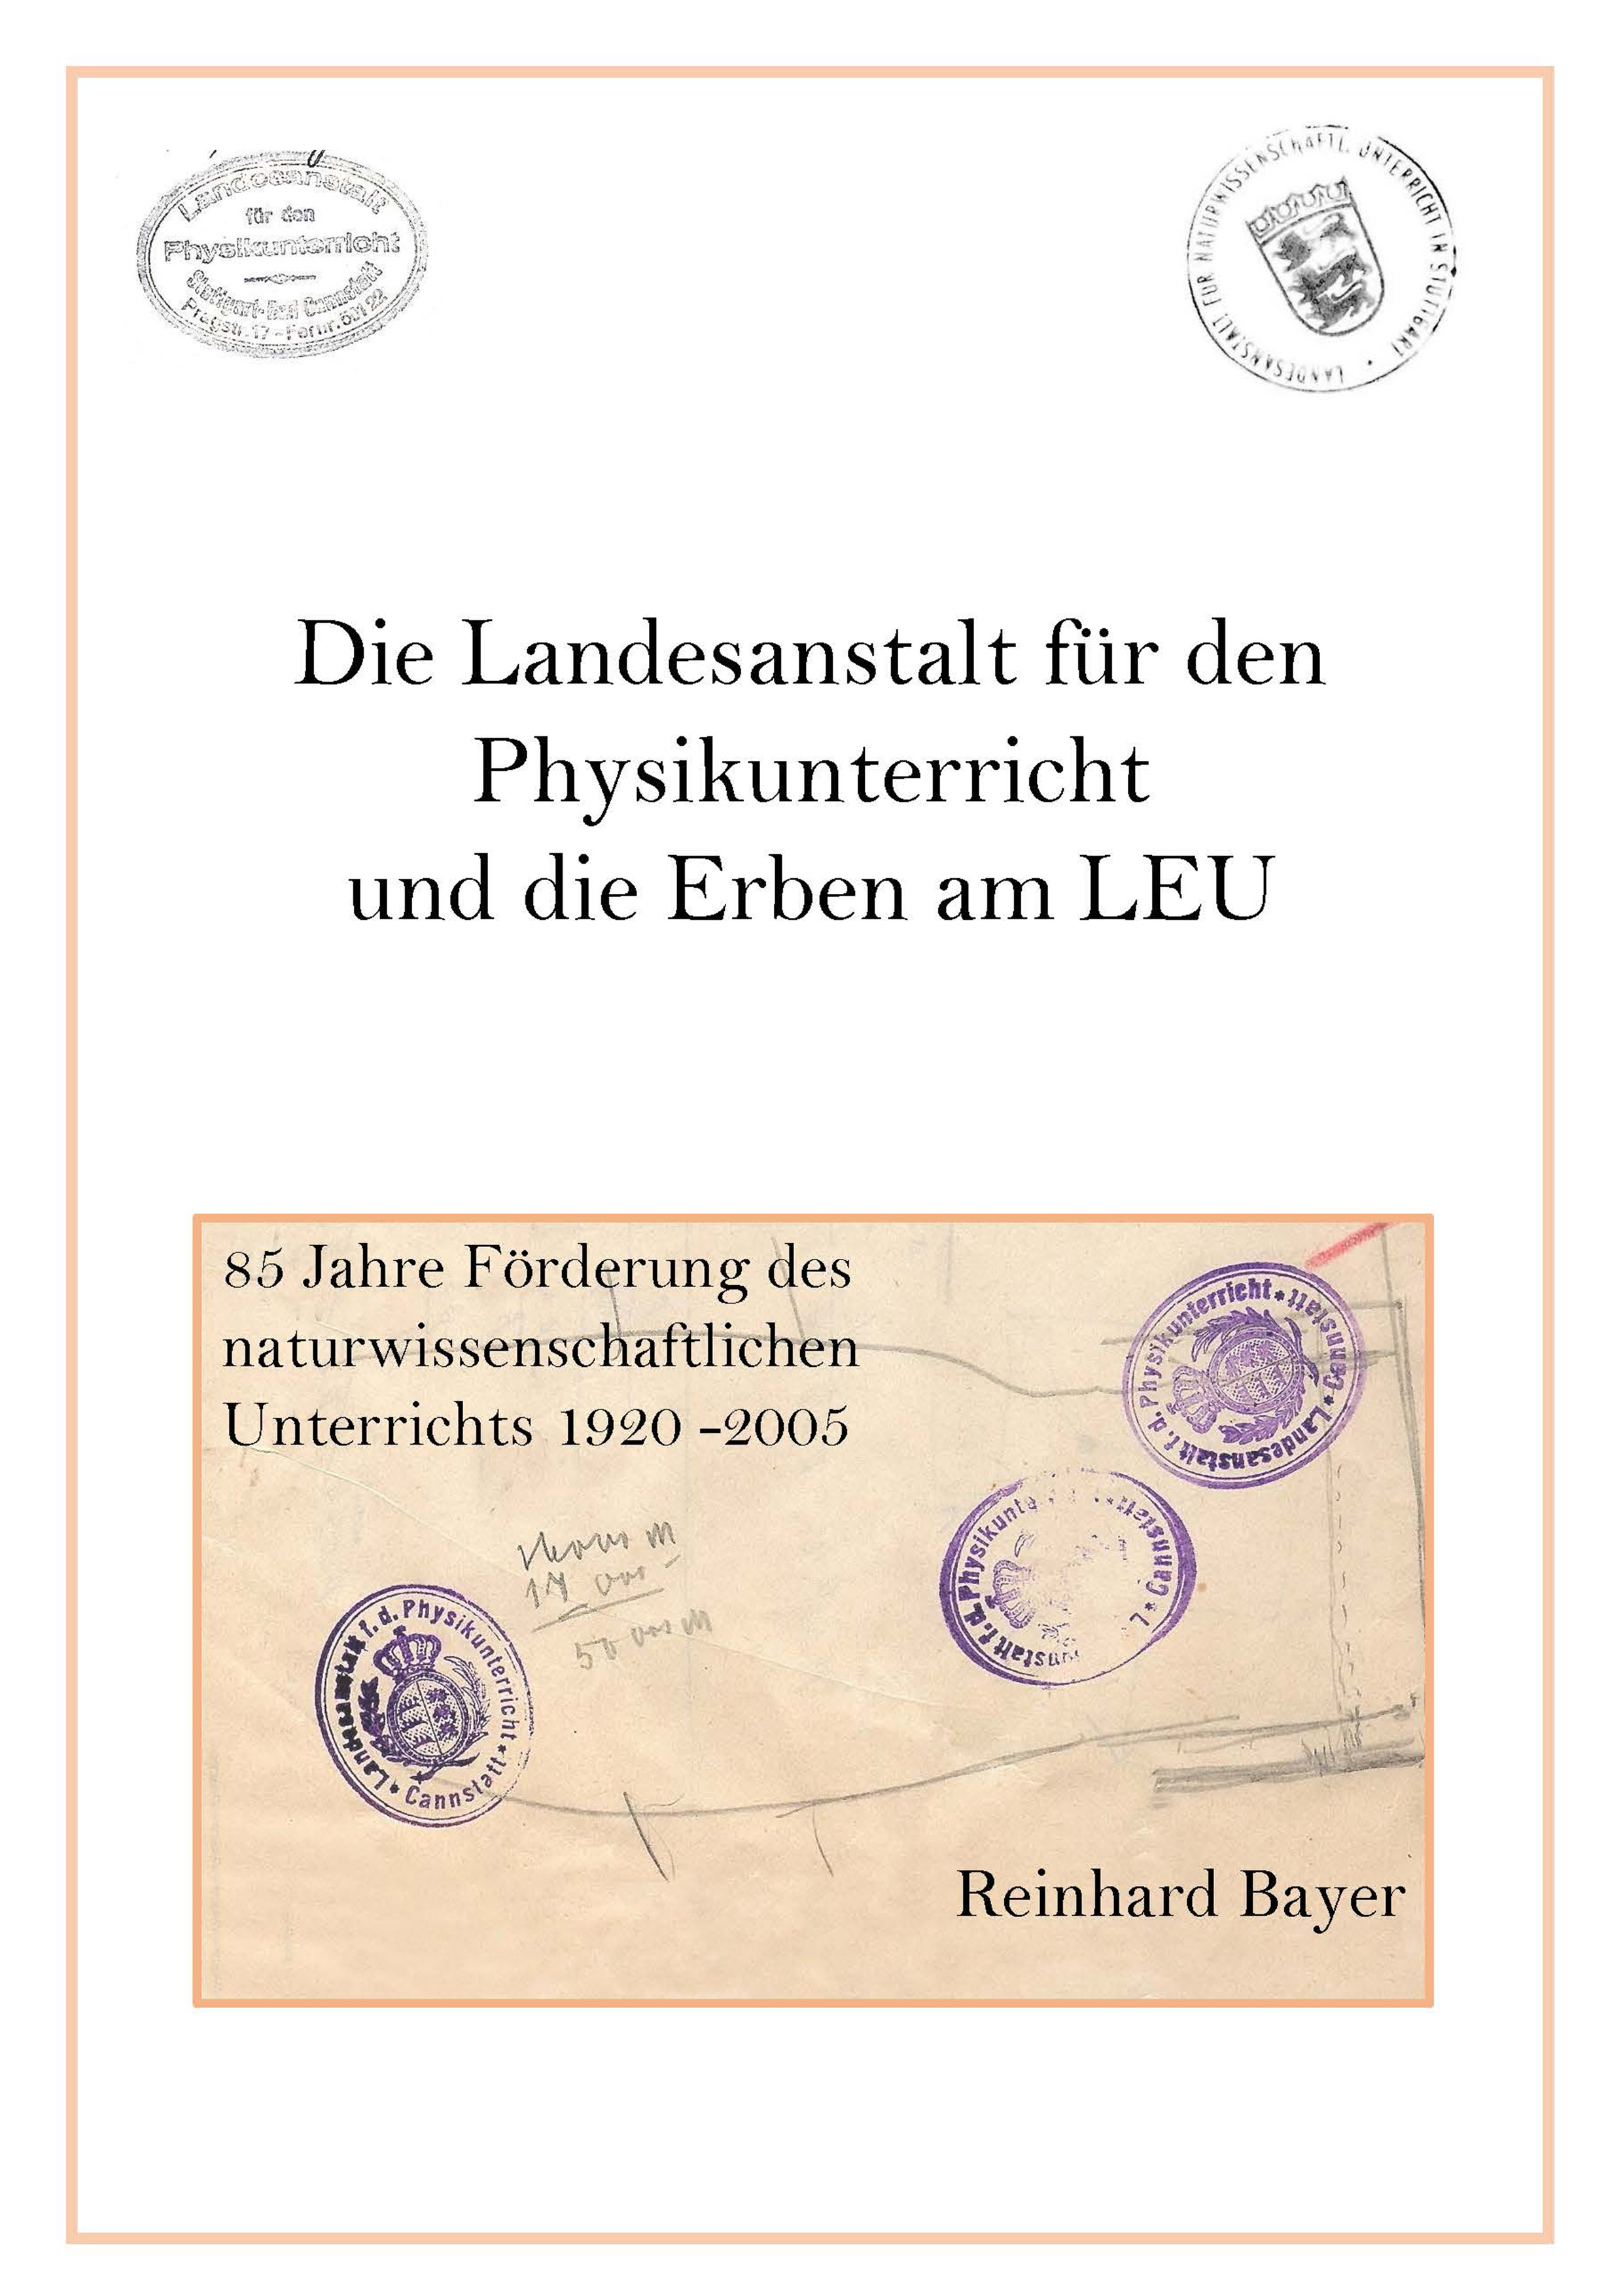 Cover der Publikation von Reinhard Bayer 